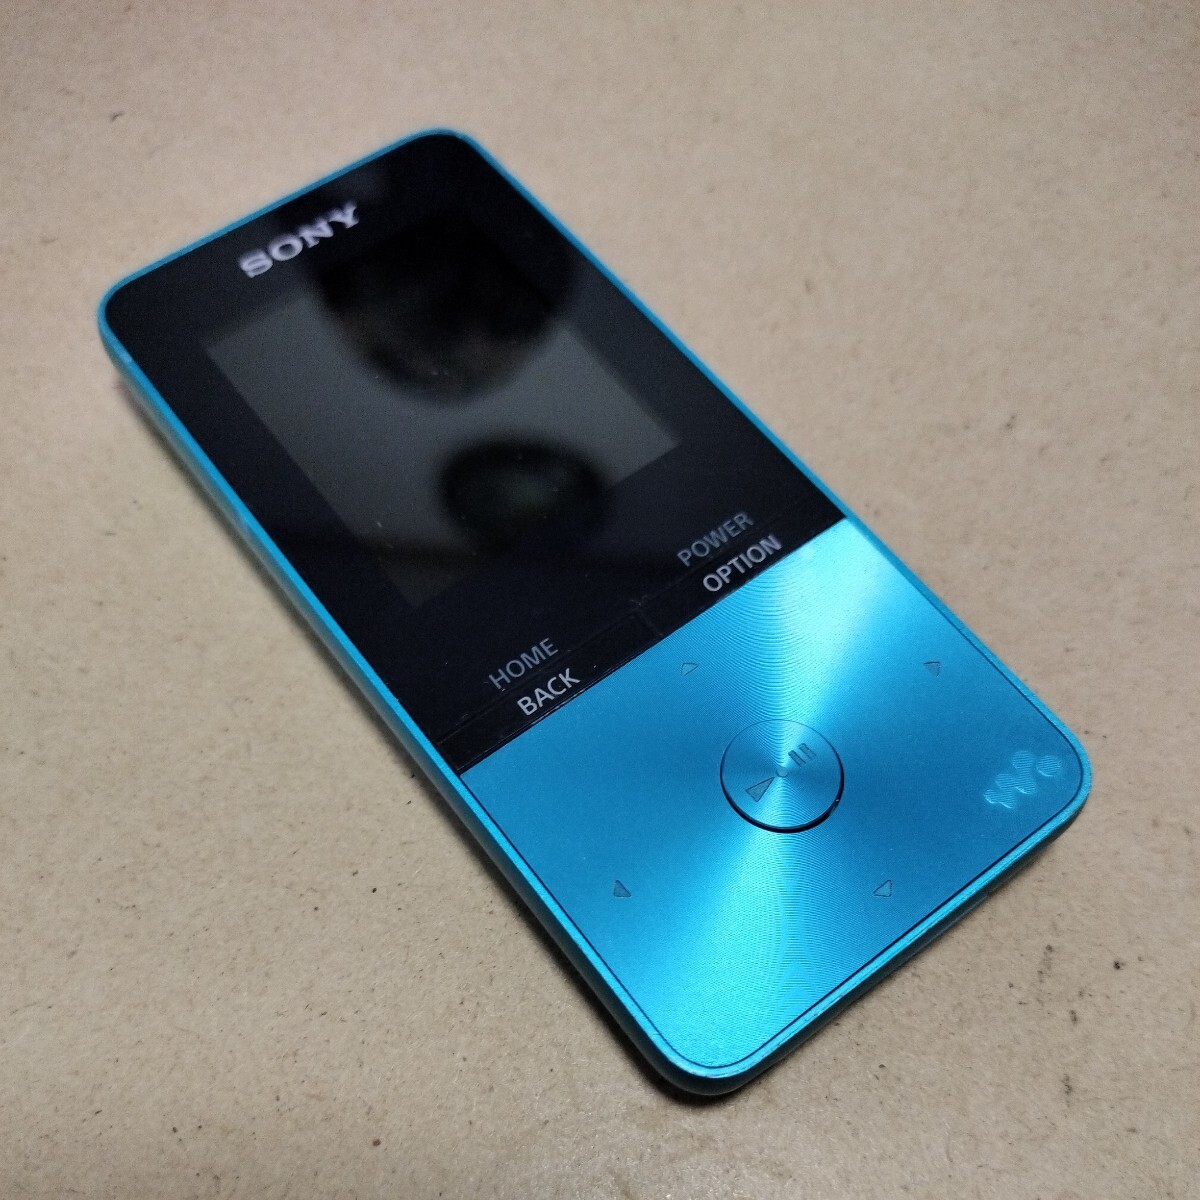 SONY WALKMAN ソニー デジタルオーディオプレイヤー ウォークマン WALKMAN Sシリーズ 4GB NW-S313 ブルー 良好 Bluetooth対応の画像1